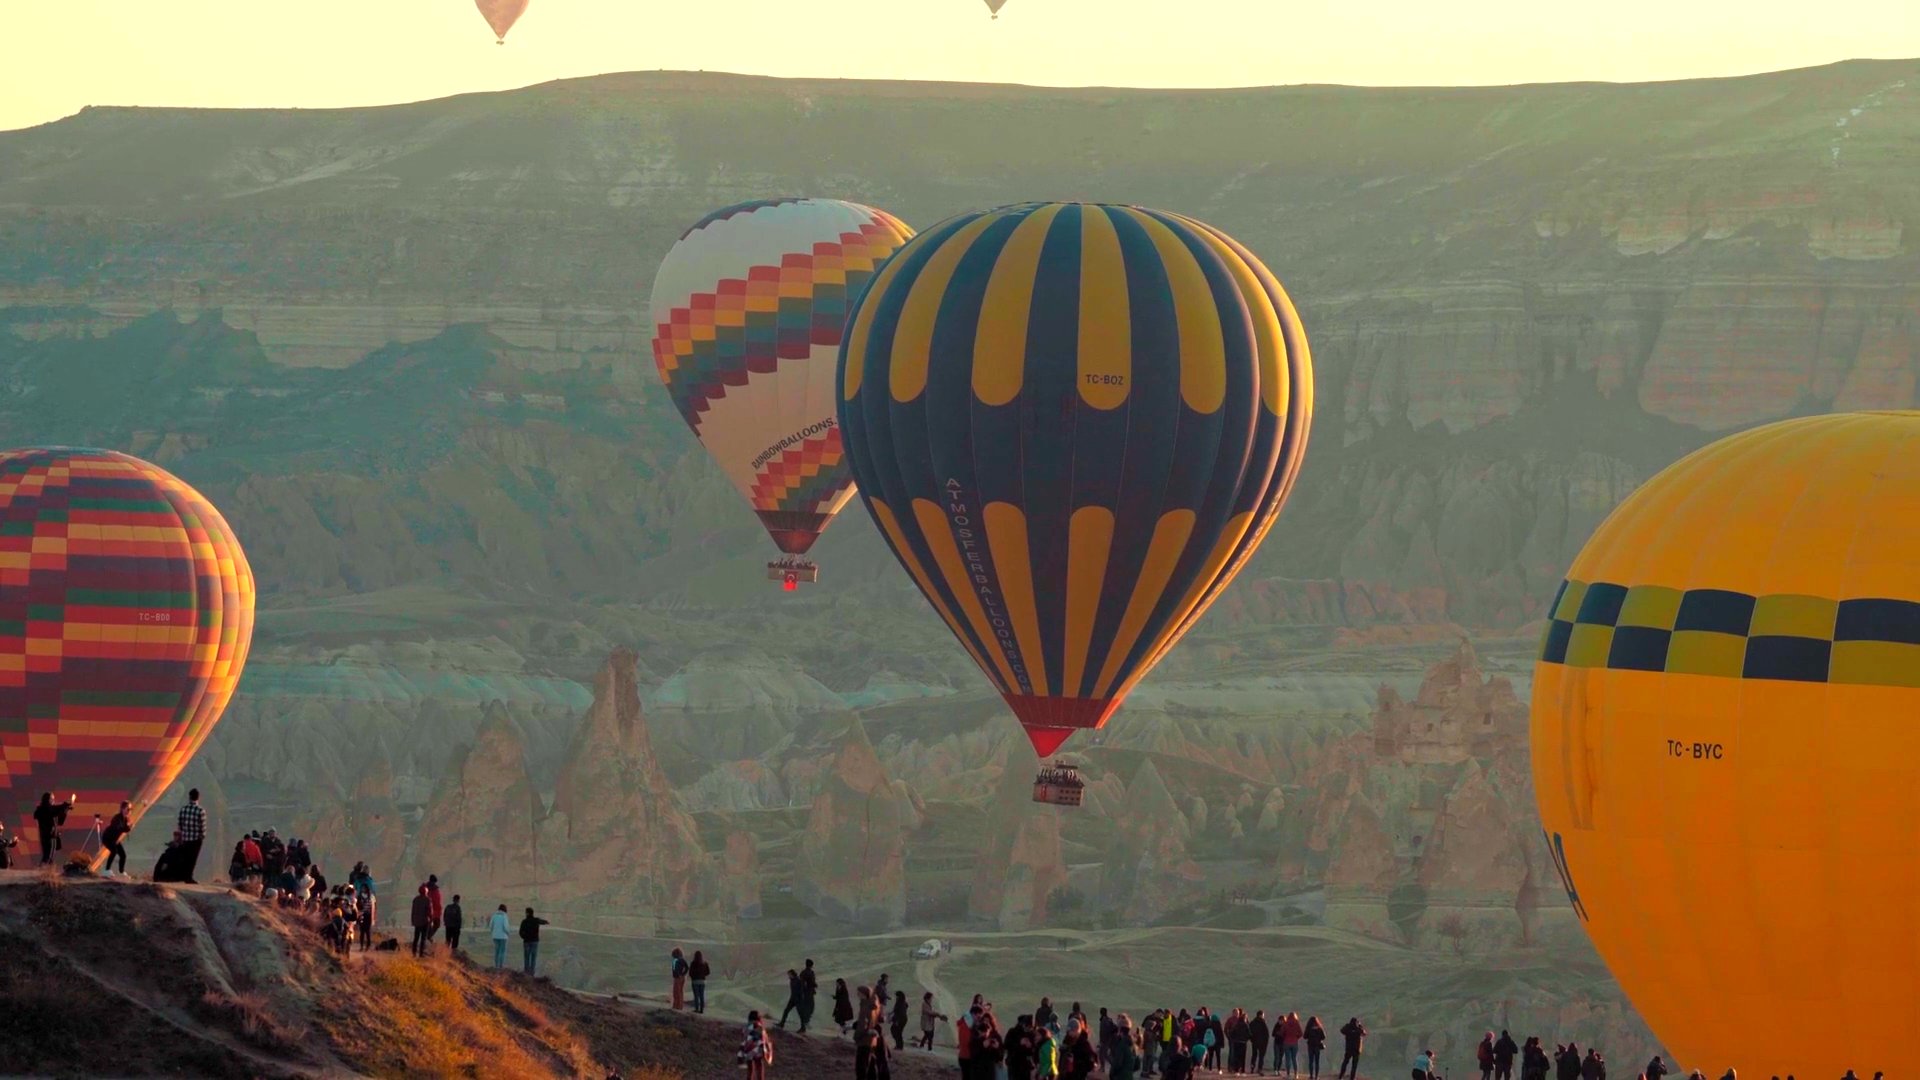 【高清图】土耳其坐热气球鸟览卡帕多奇亚山谷-中关村在线摄影论坛